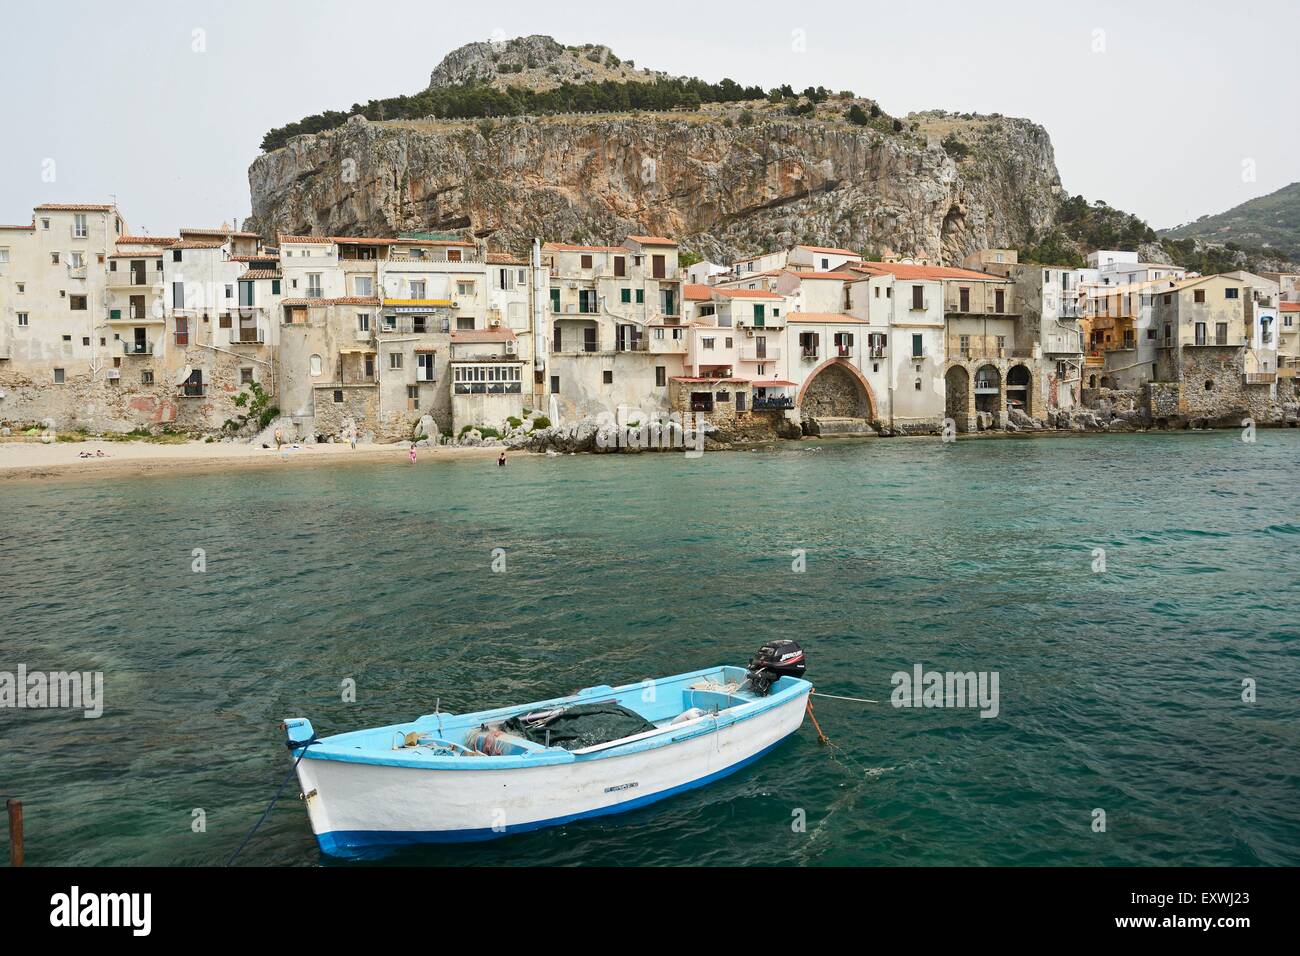 Port de pêche, Cefalù, Sicile, Italie, Europe Banque D'Images